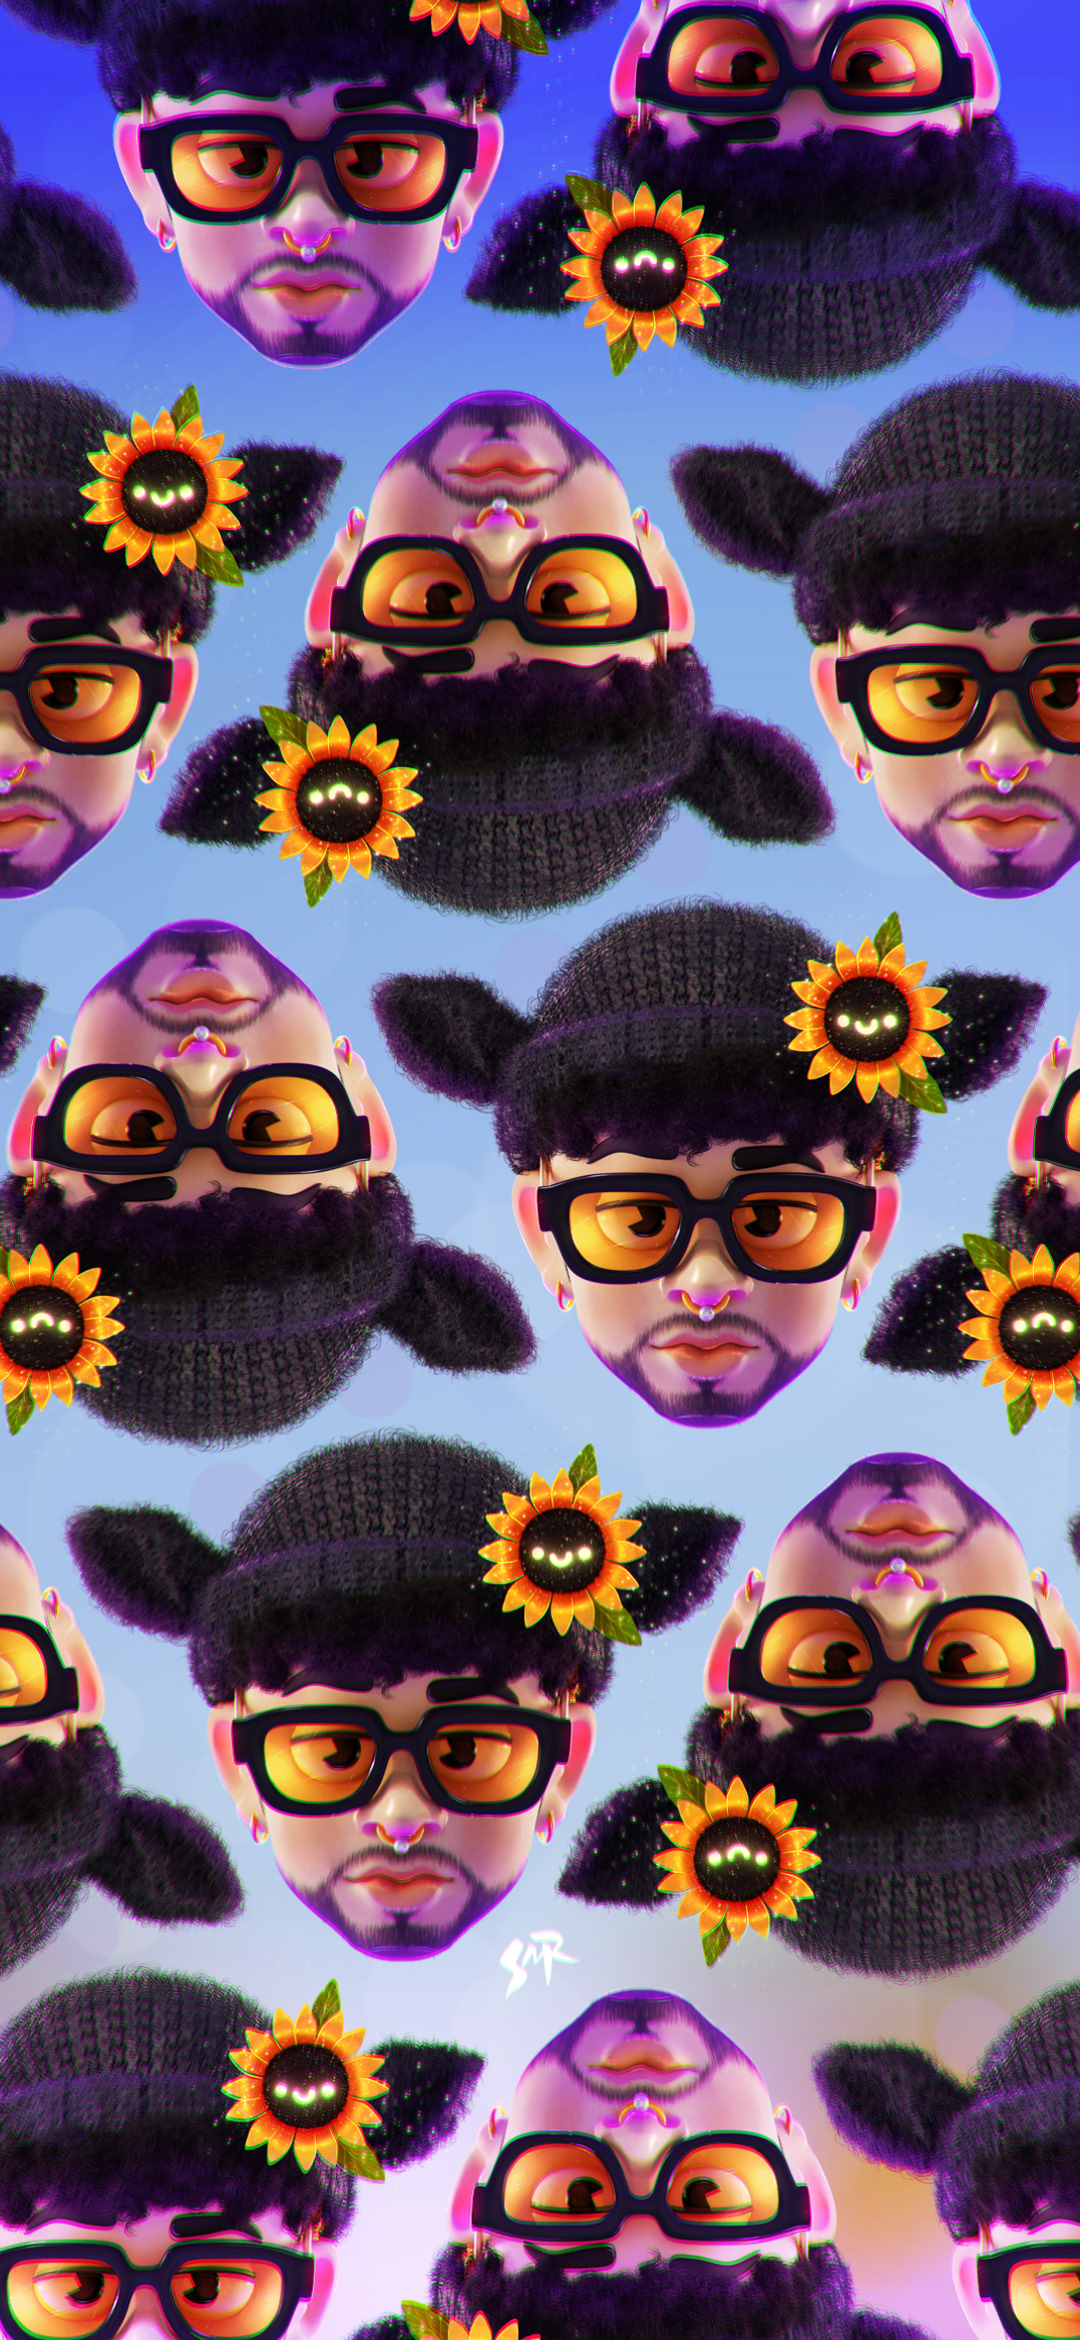 3D blender characterdesign fanart ILLUSTRATION  music sunflower Sunglasses